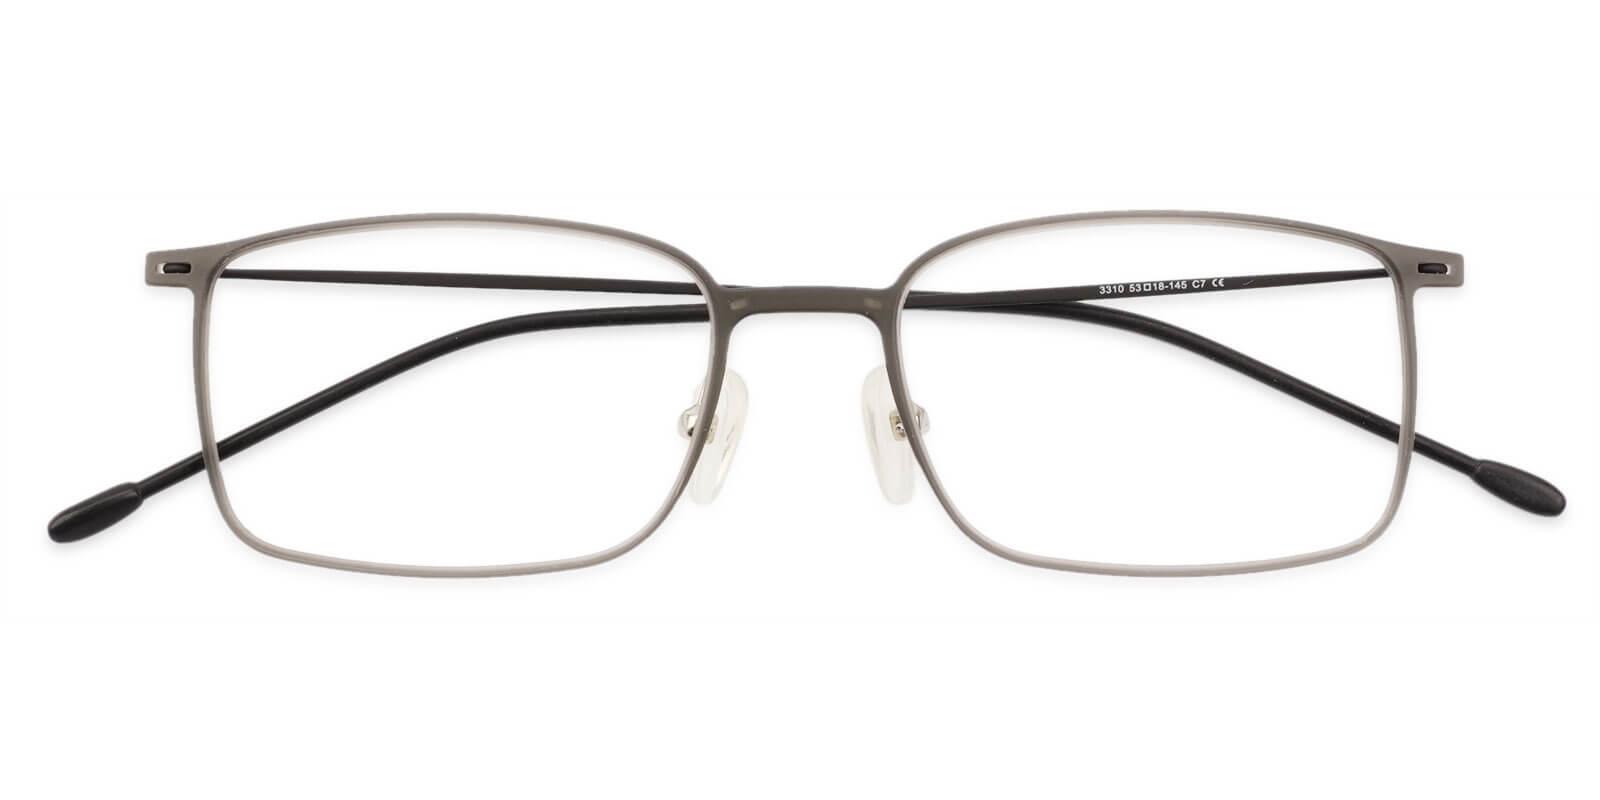 Philadelphia Gray Combination Eyeglasses , Lightweight , NosePads Frames from ABBE Glasses